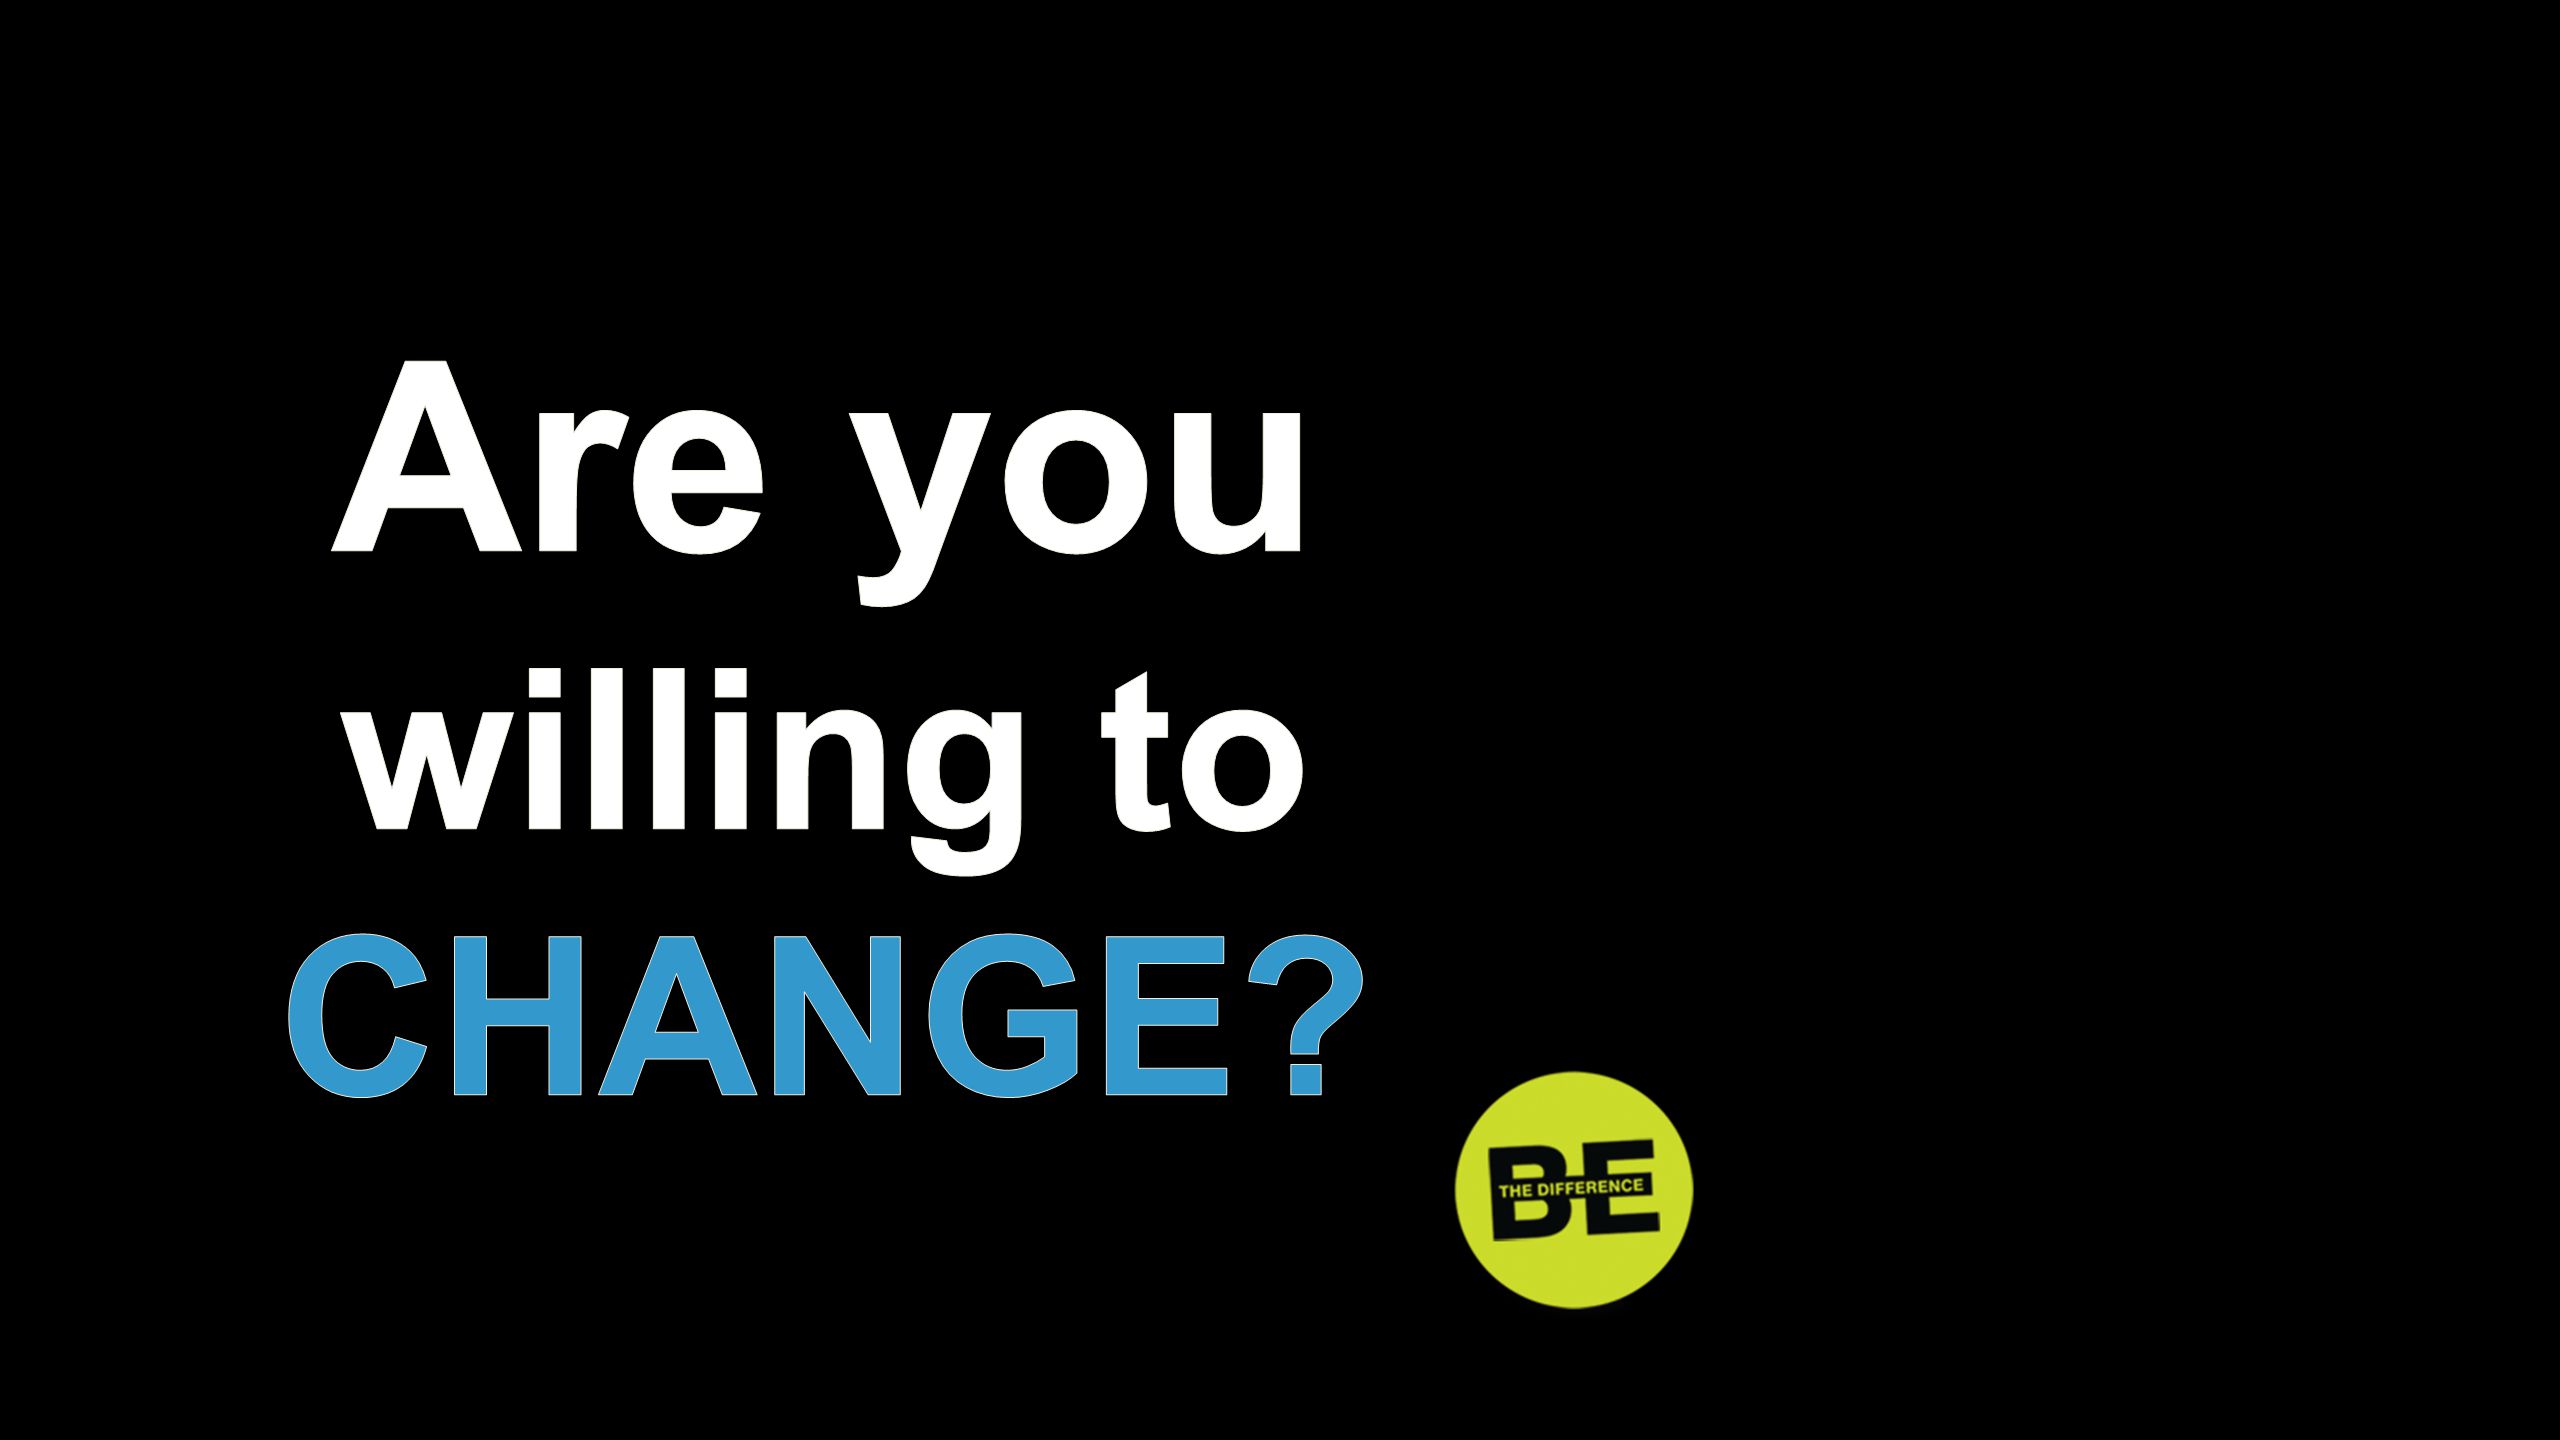 Are you willing to CHANGE Are you willing to change